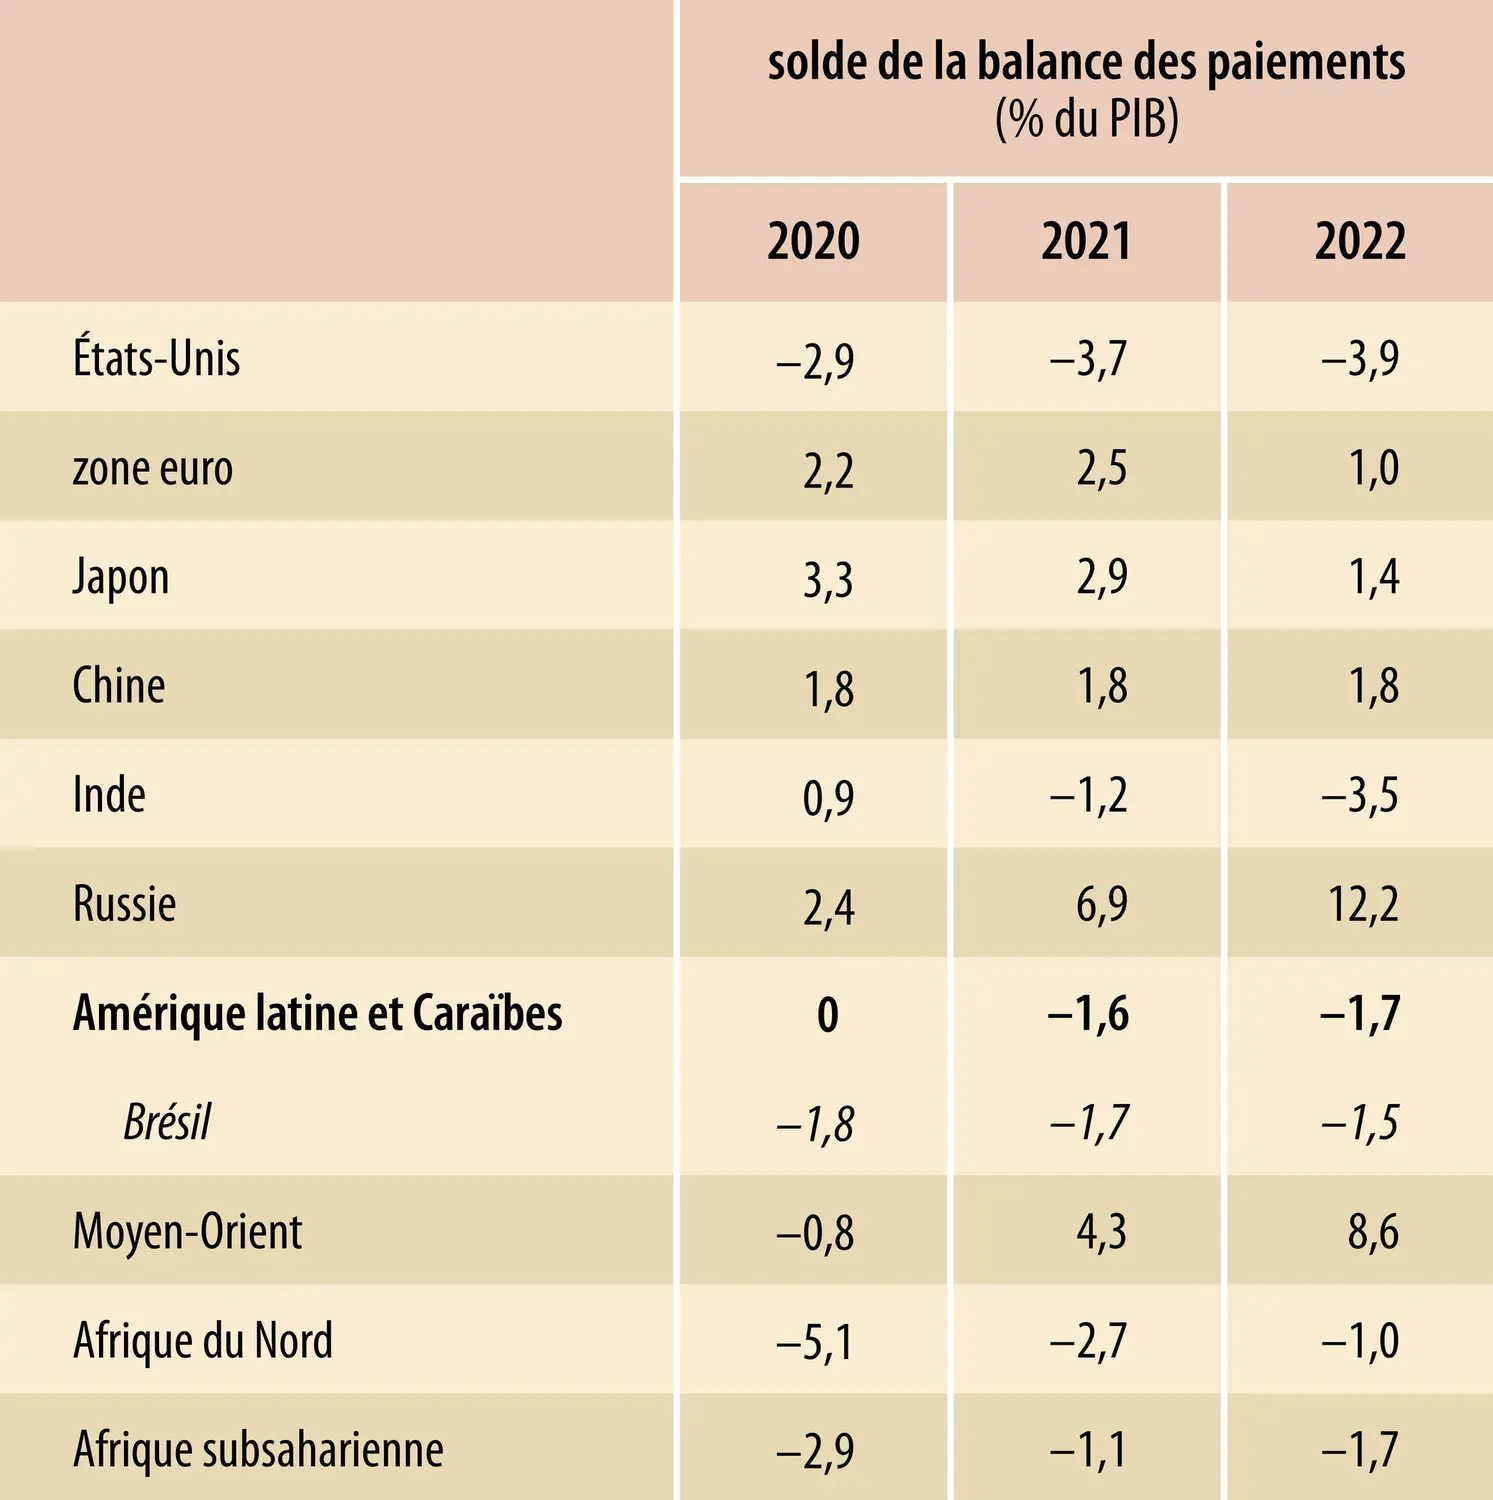 Solde de la balance des paiements au niveau mondial (2020-2022)